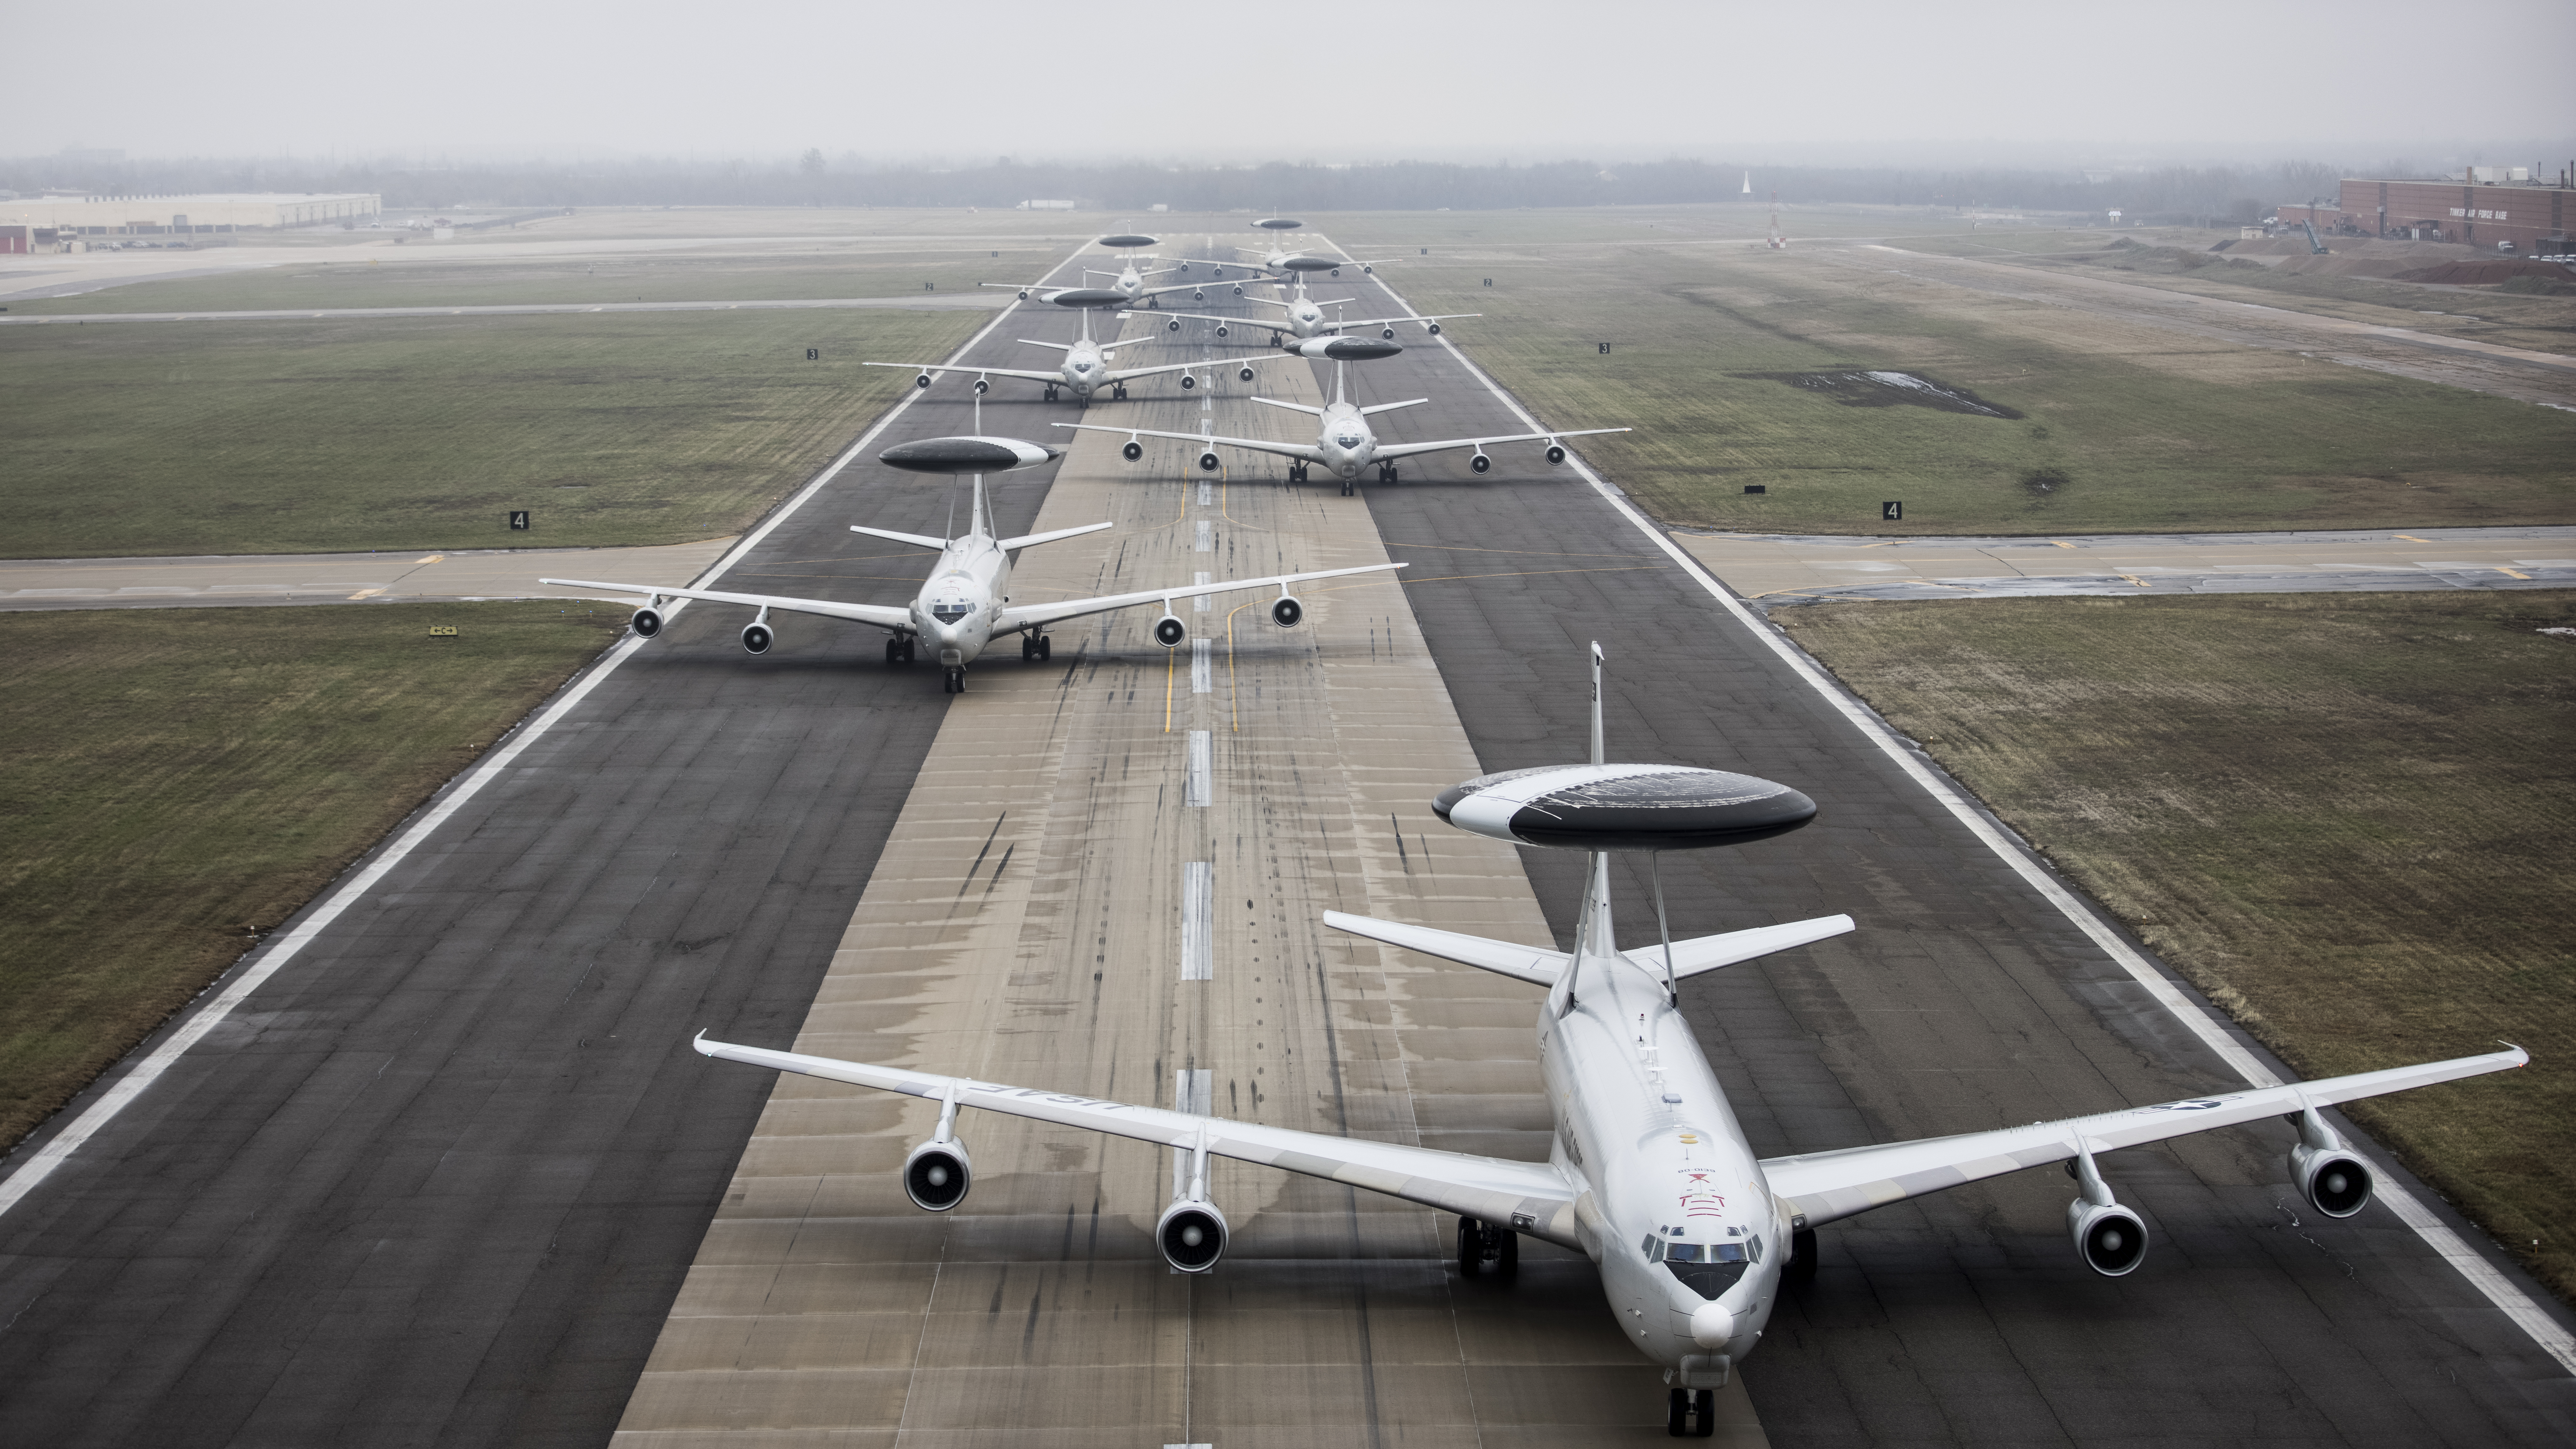 L'aeronautica militare degli Stati Uniti ha dimostrato il volo a dorso di elefante del Boeing E-3 Sentry portando in cielo diversi aerei contemporaneamente.